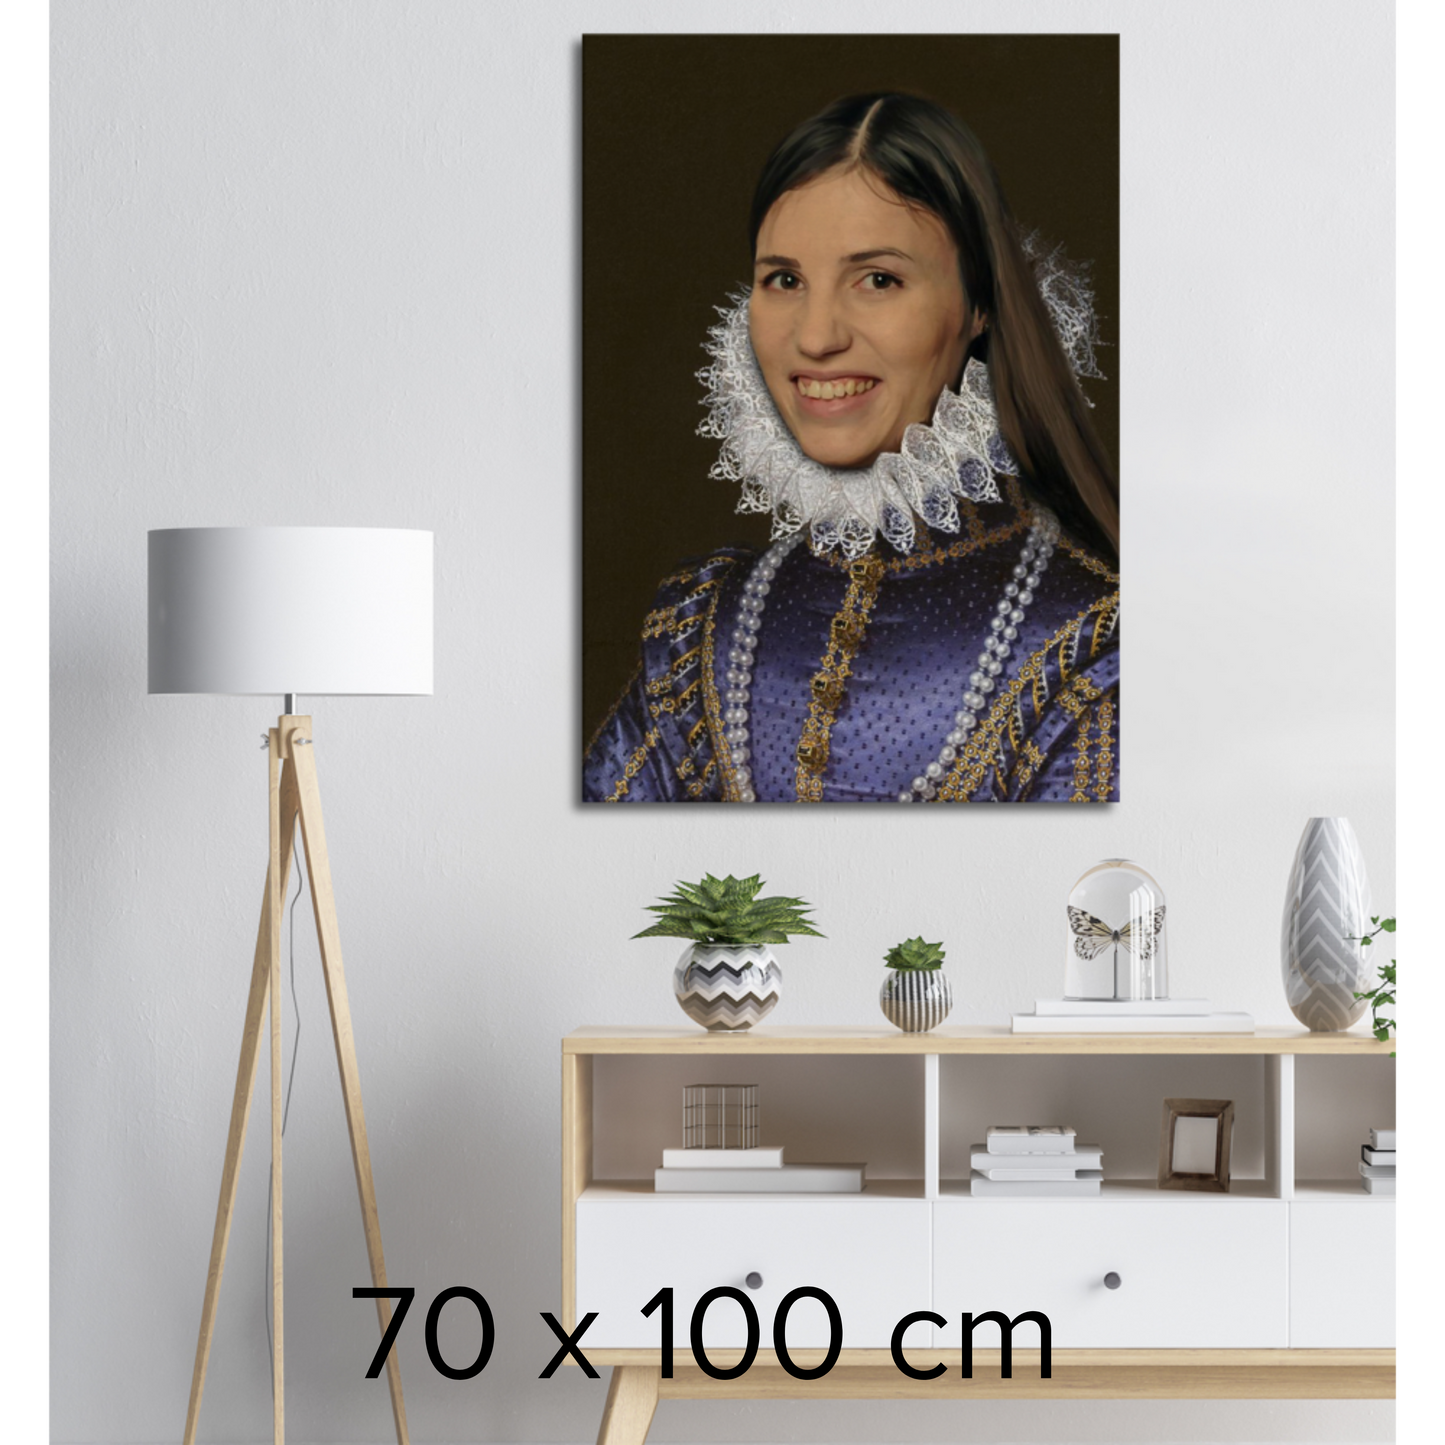 GREVINNAN- Skräddarsytt kungligt porträtt - unik presentidé - Canvas Tavla